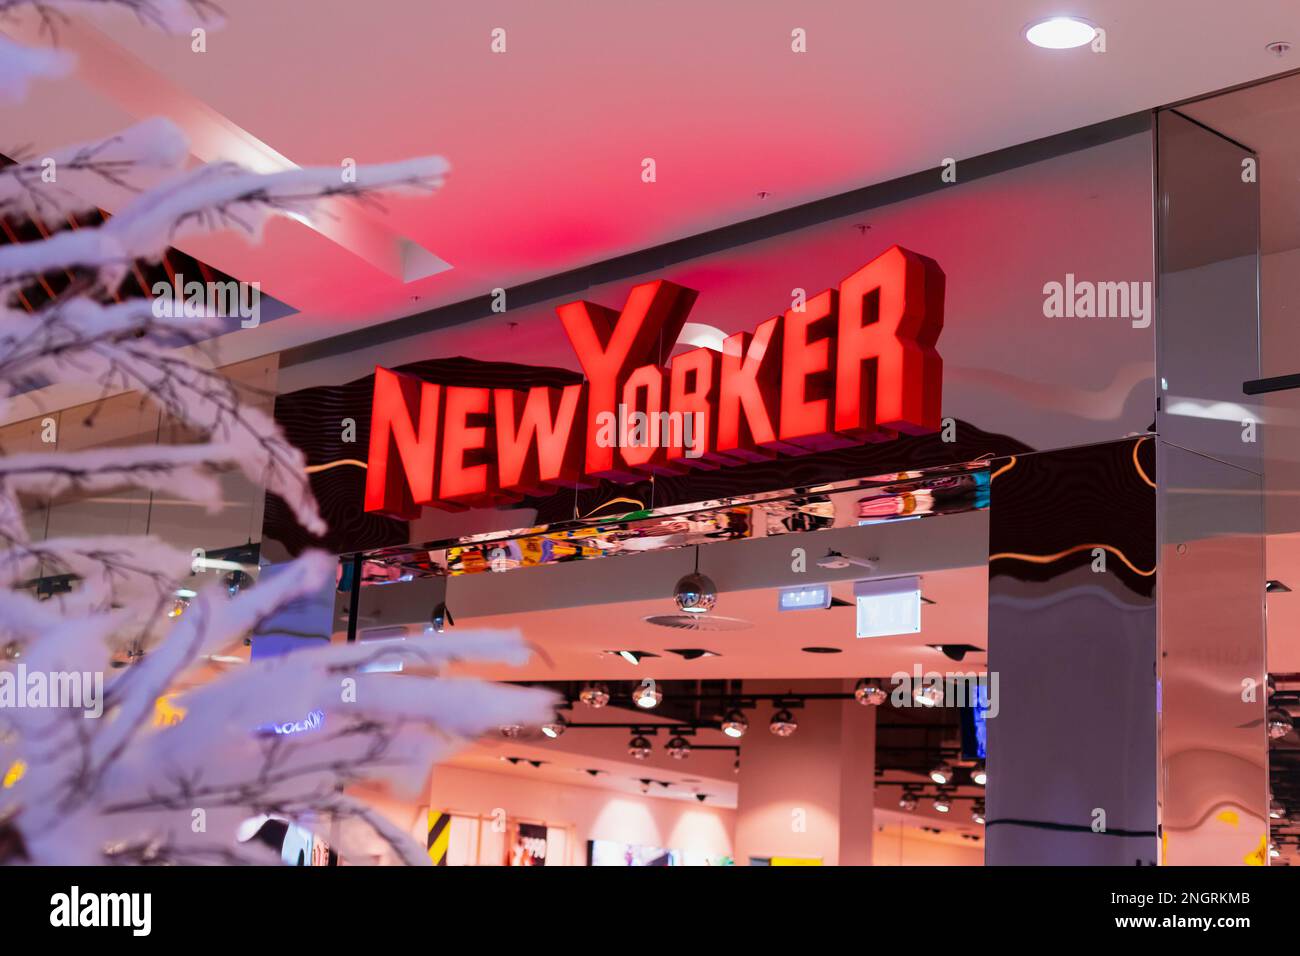 New Yorker - Designerlabel, Neonschild aus nächster Nähe, Eingang zum NewYorker Store in der Einkaufspassage an Neujahr und Weihnachtsfeiertagen. Pavlodar, Kasachstan Stockfoto